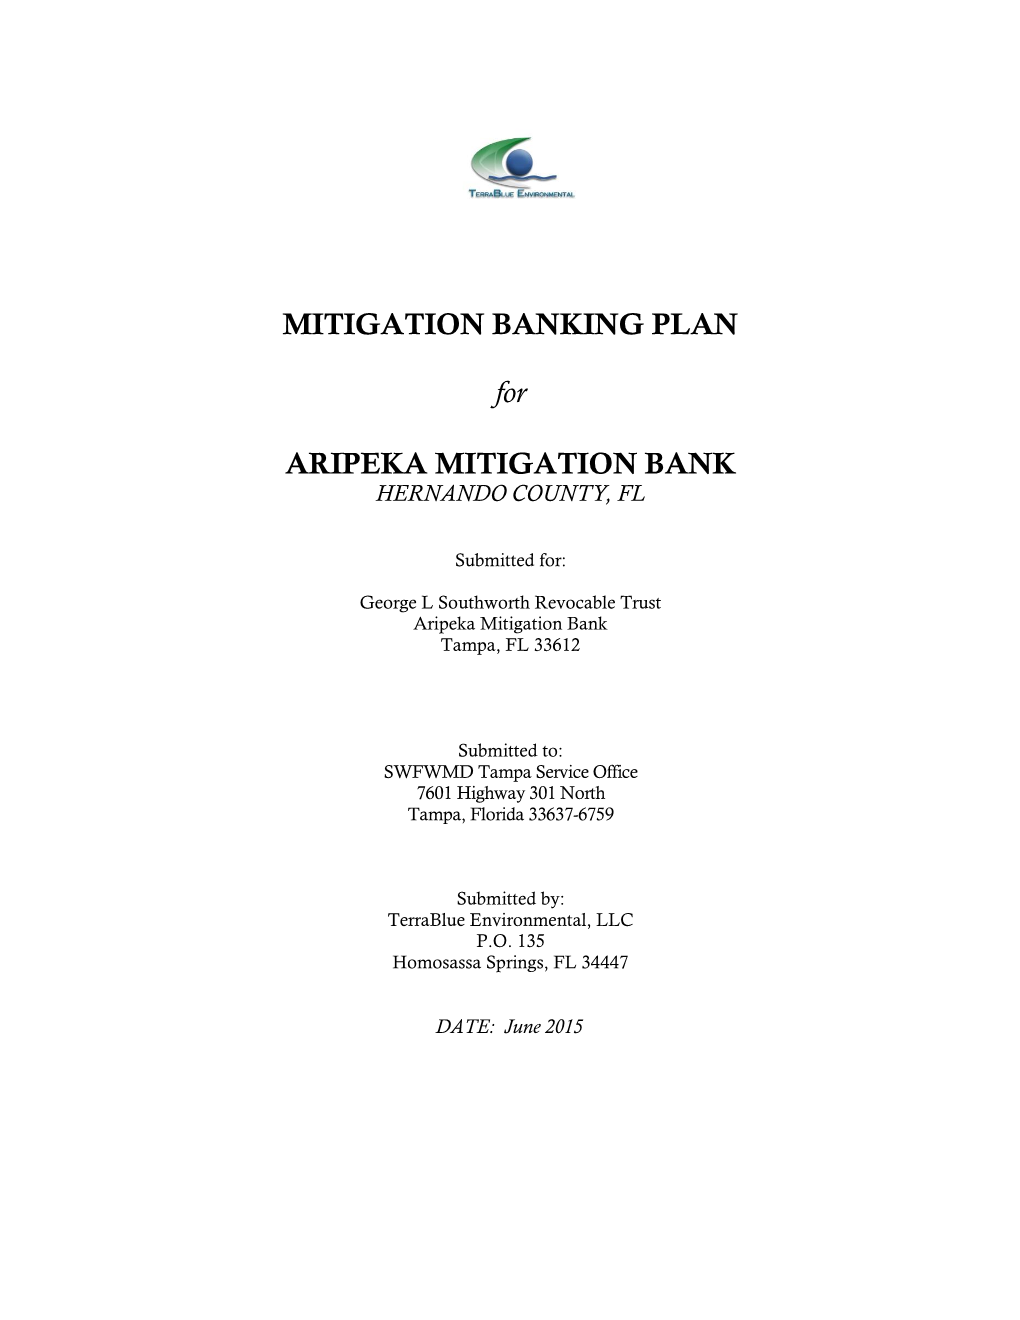 MITIGATION BANKING PLAN for ARIPEKA MITIGATION BANK